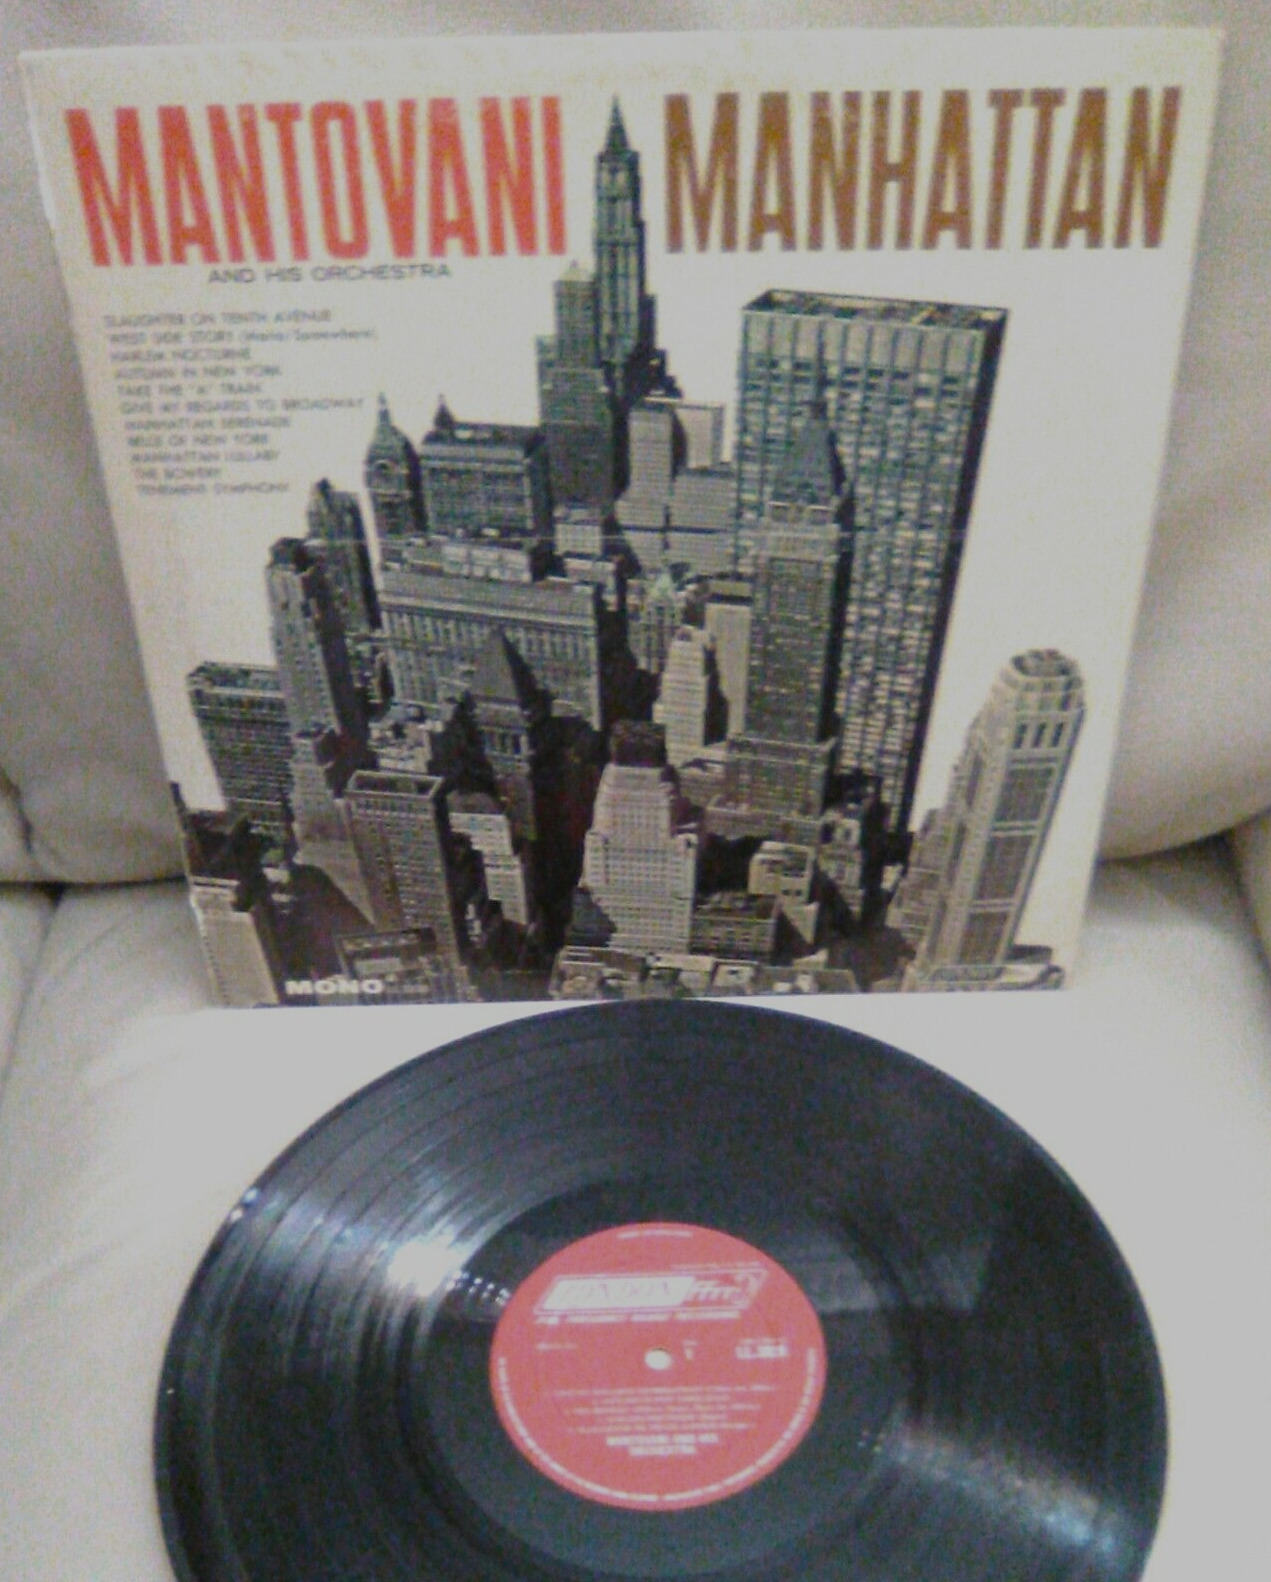 Mantovani Manhattan Vinyl LP Record Album